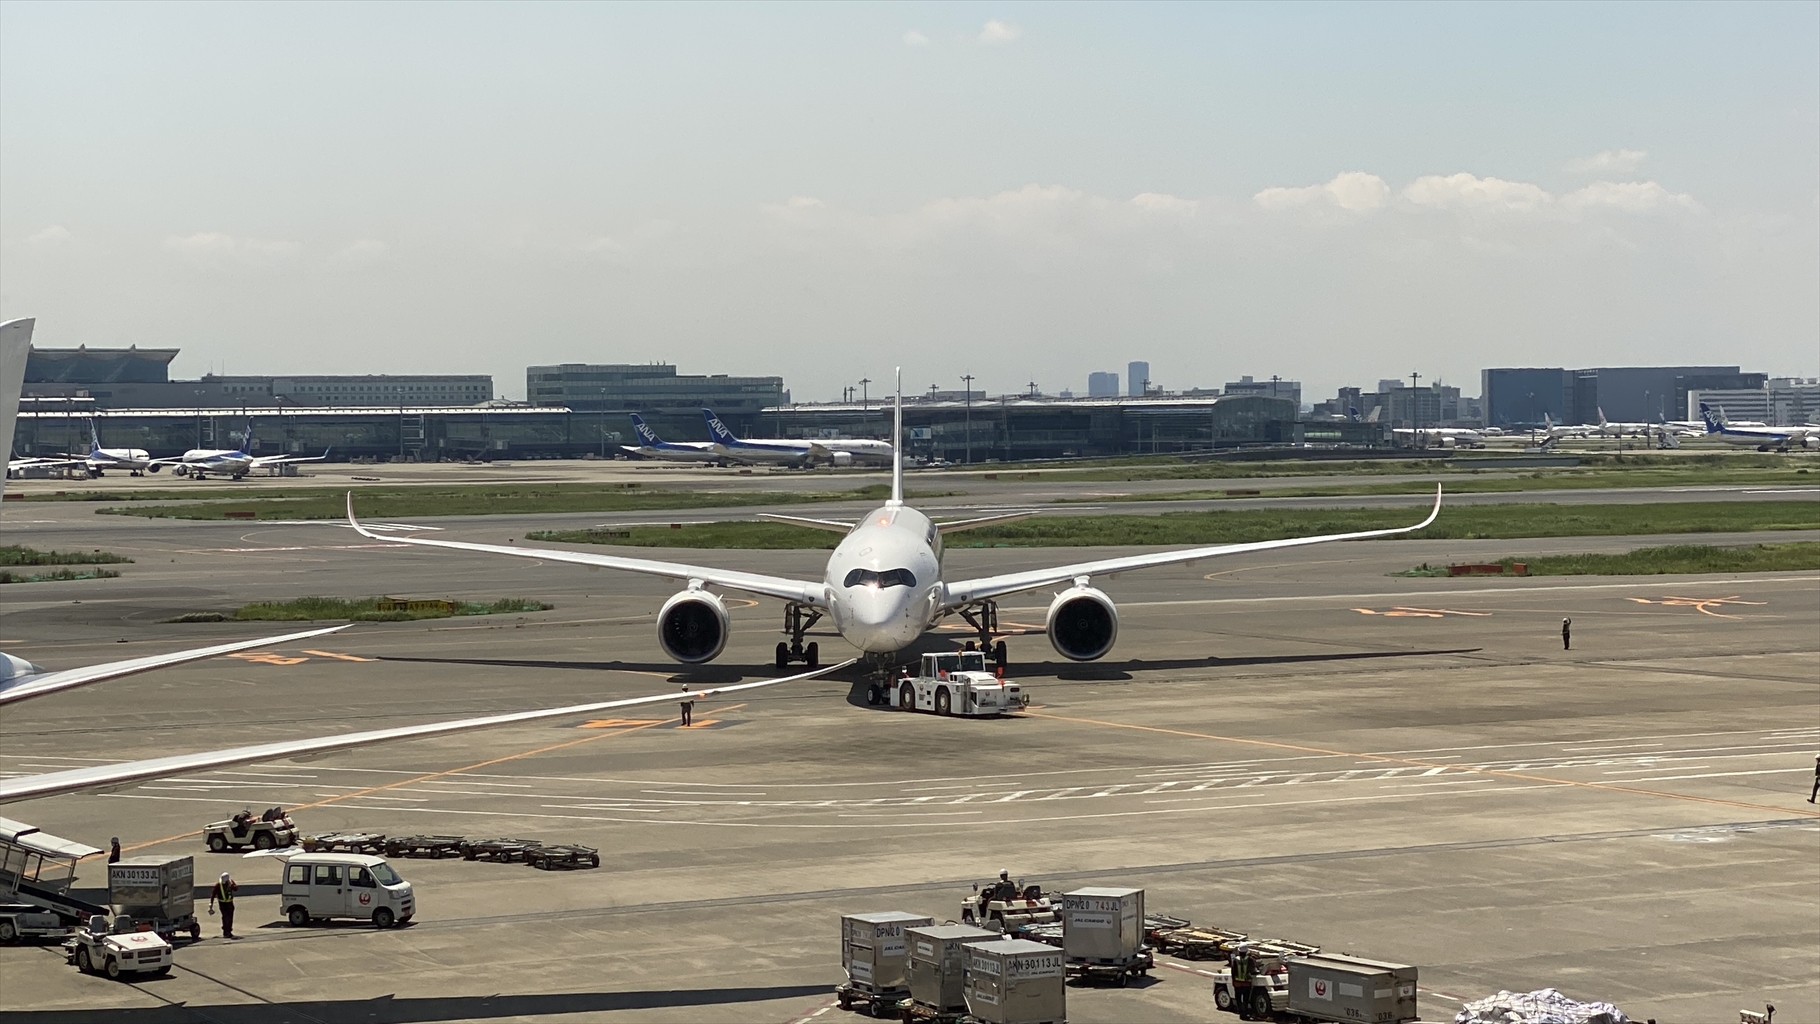 羽田空港 第一ターミナル 南ウィング JAL DIAMOND PREMIER LOUNGE 21年6月訪問